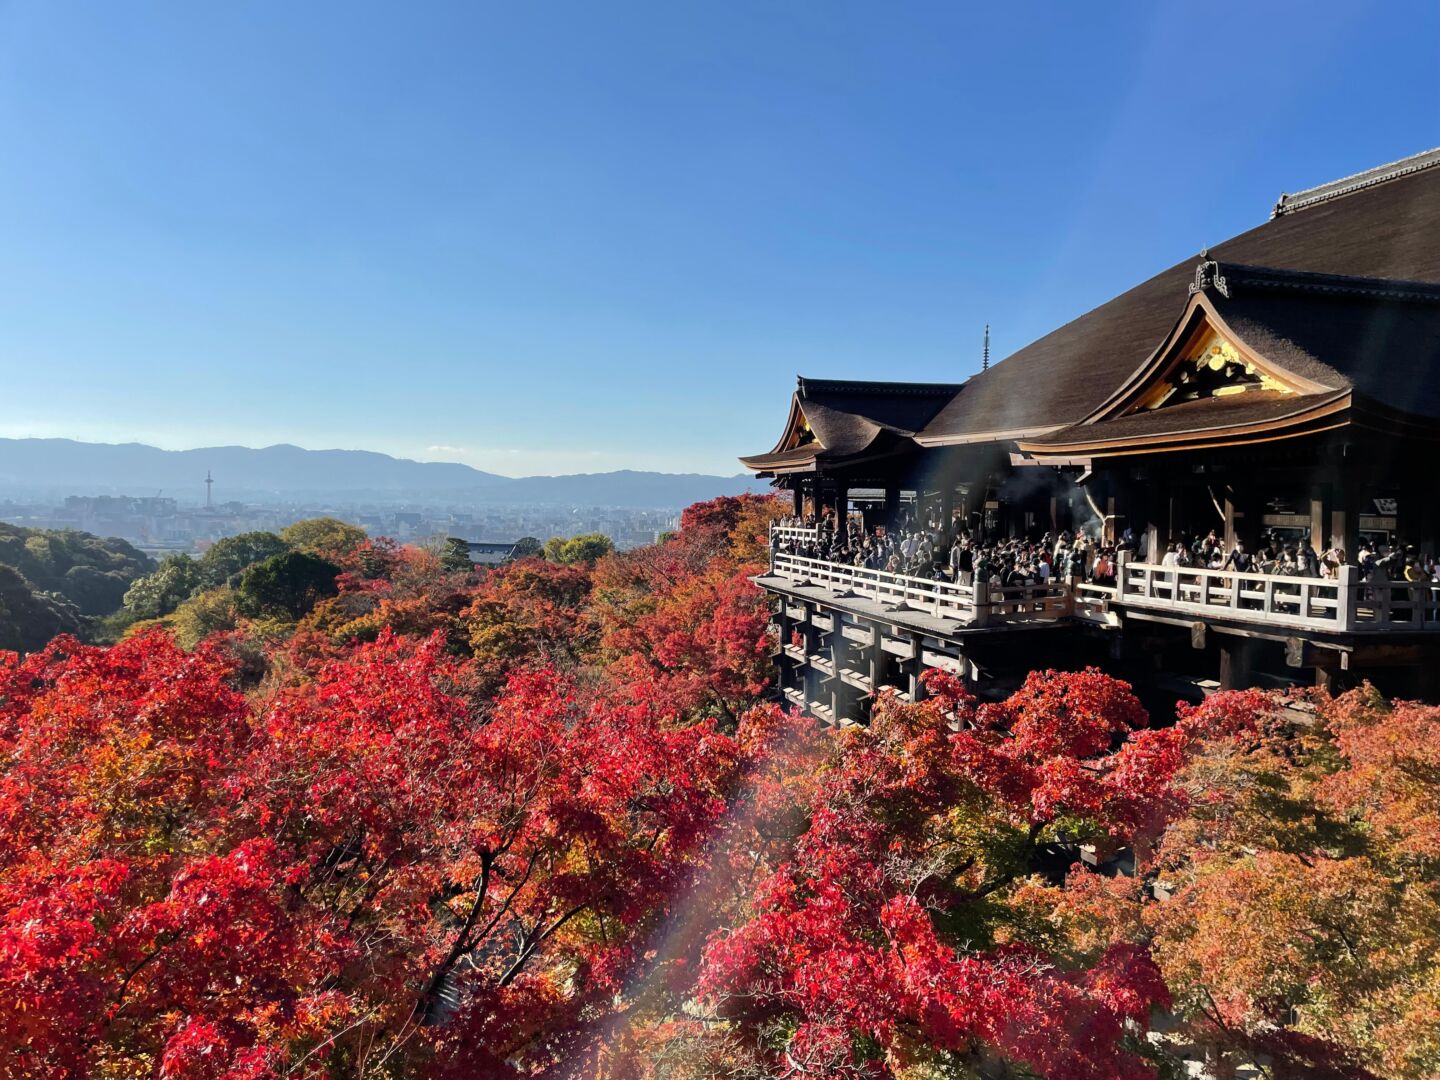 Uma parte do templo Kiomizu Dera, céu azul e embaixo um chão de árvores com a folhagem vermelha. 